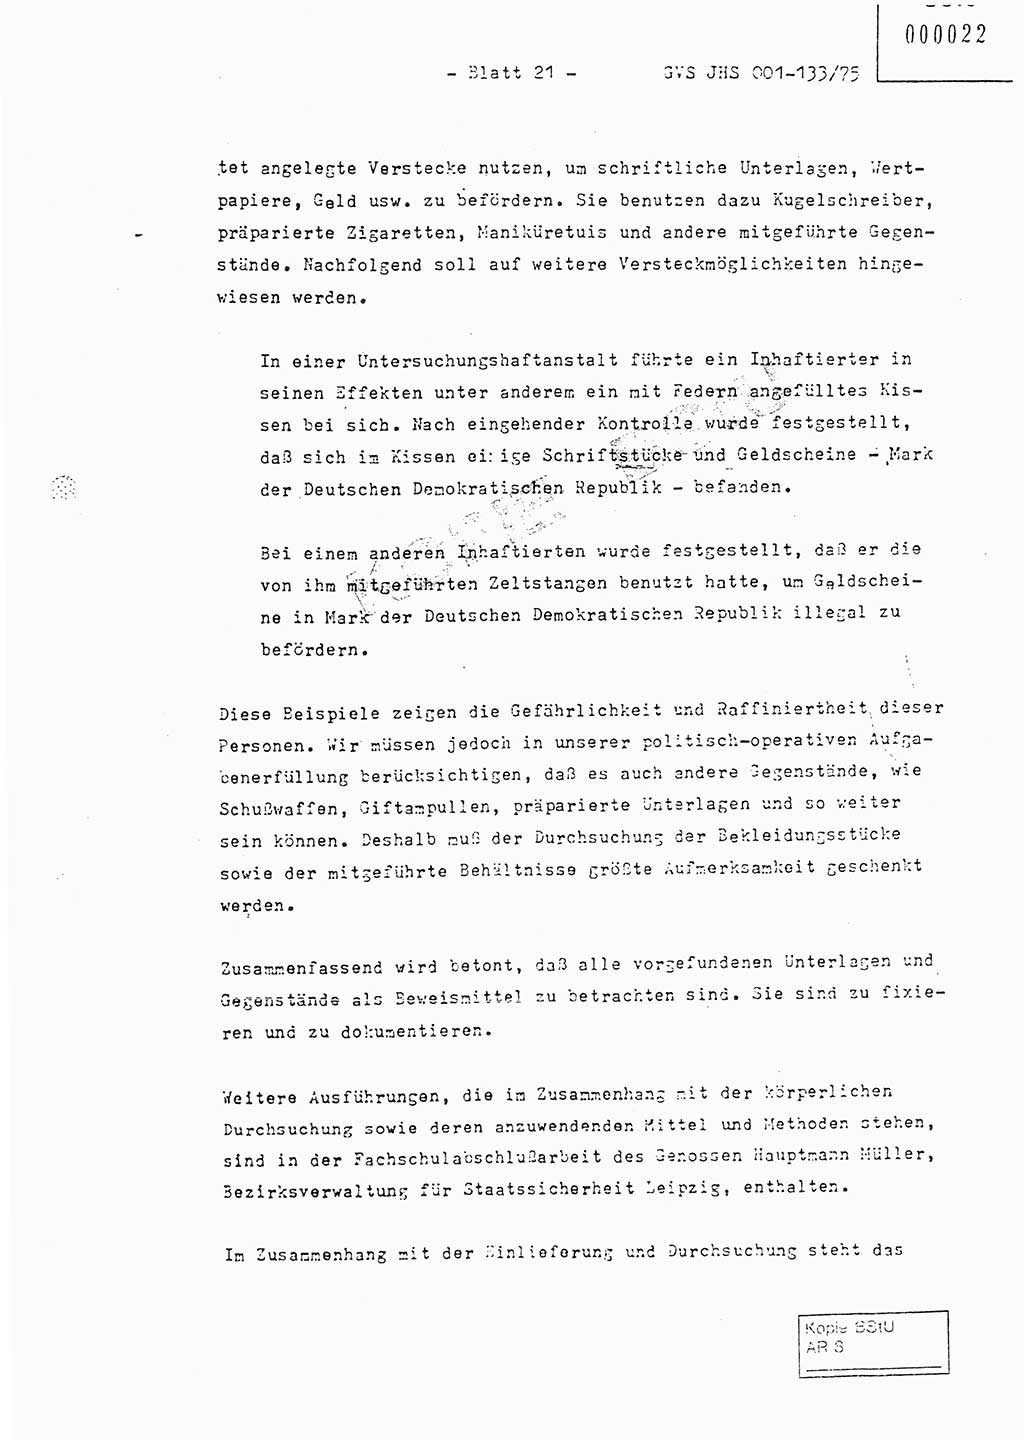 Fachschulabschlußarbeit Major Werner Braun (Abt. ⅩⅣ), Hauptmann Klaus Zeiß (Abt. ⅩⅣ), Ministerium für Staatssicherheit (MfS) [Deutsche Demokratische Republik (DDR)], Juristische Hochschule (JHS), Geheime Verschlußsache (GVS) 001-133/75, Potsdam 1976, Blatt 21 (FS-Abschl.-Arb. MfS DDR JHS GVS 001-133/75 1976, Bl. 21)